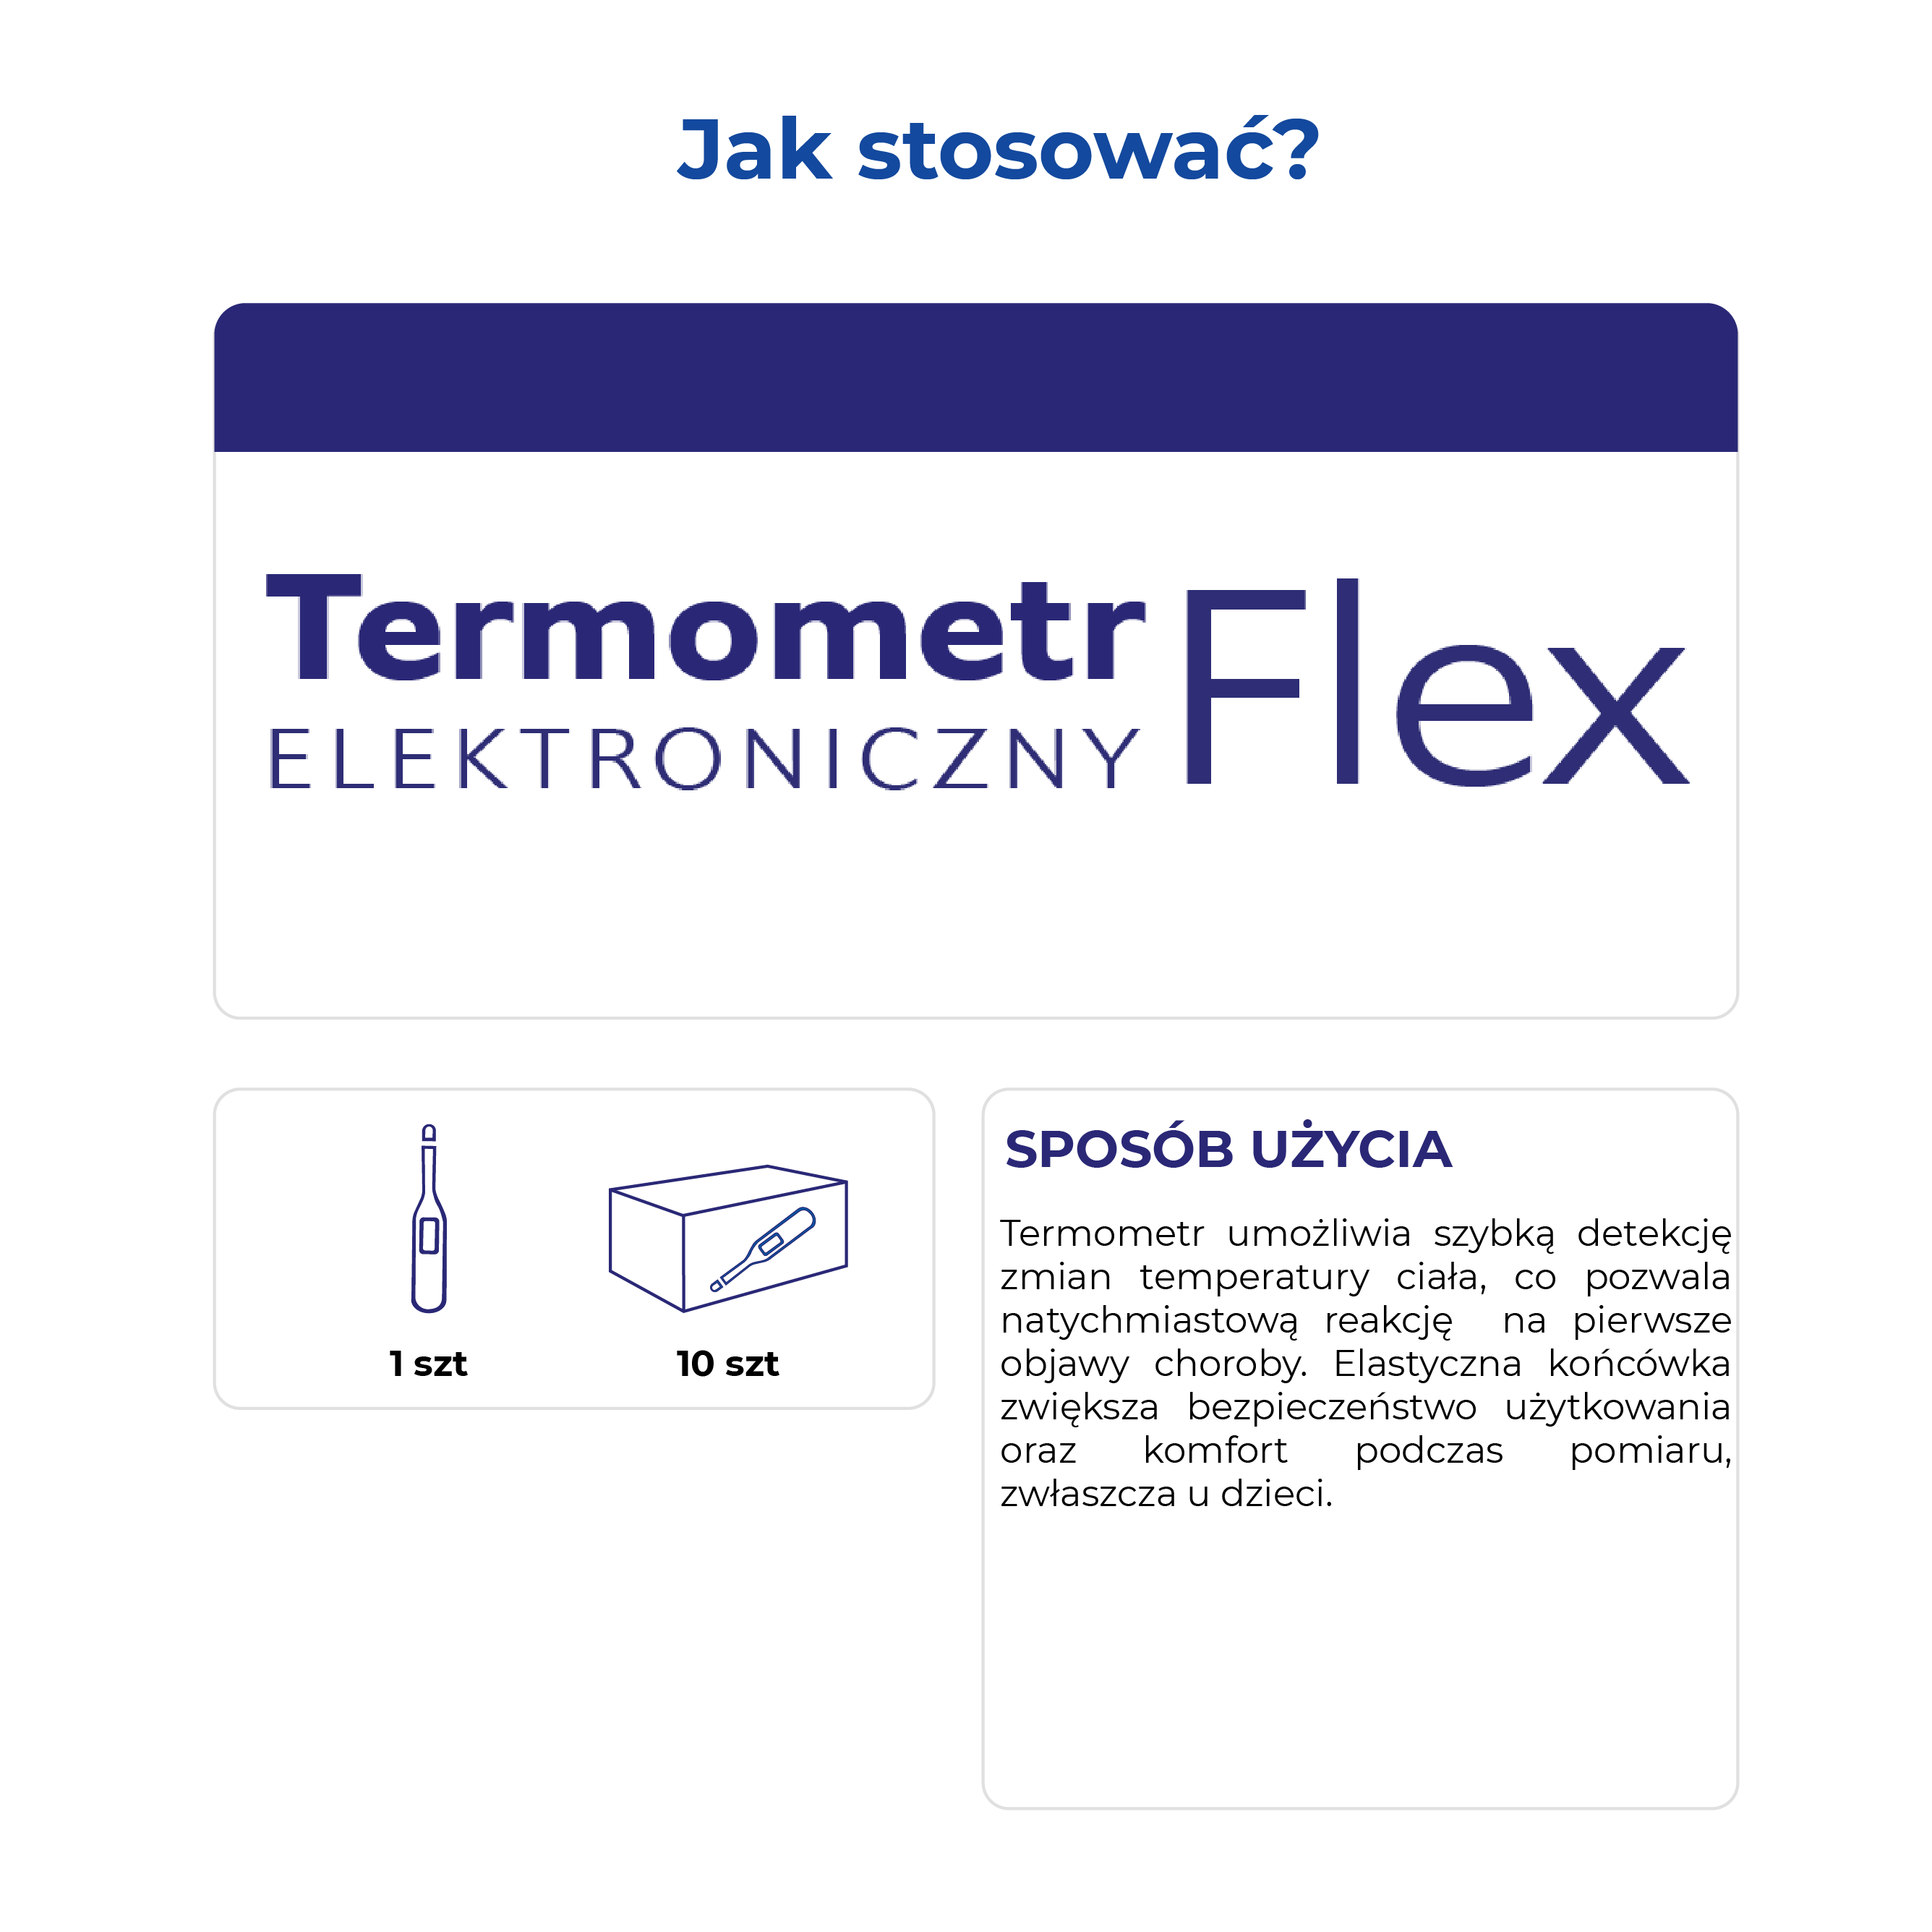 Termometr ELEKTRONICZNY Flex 1 sztuka